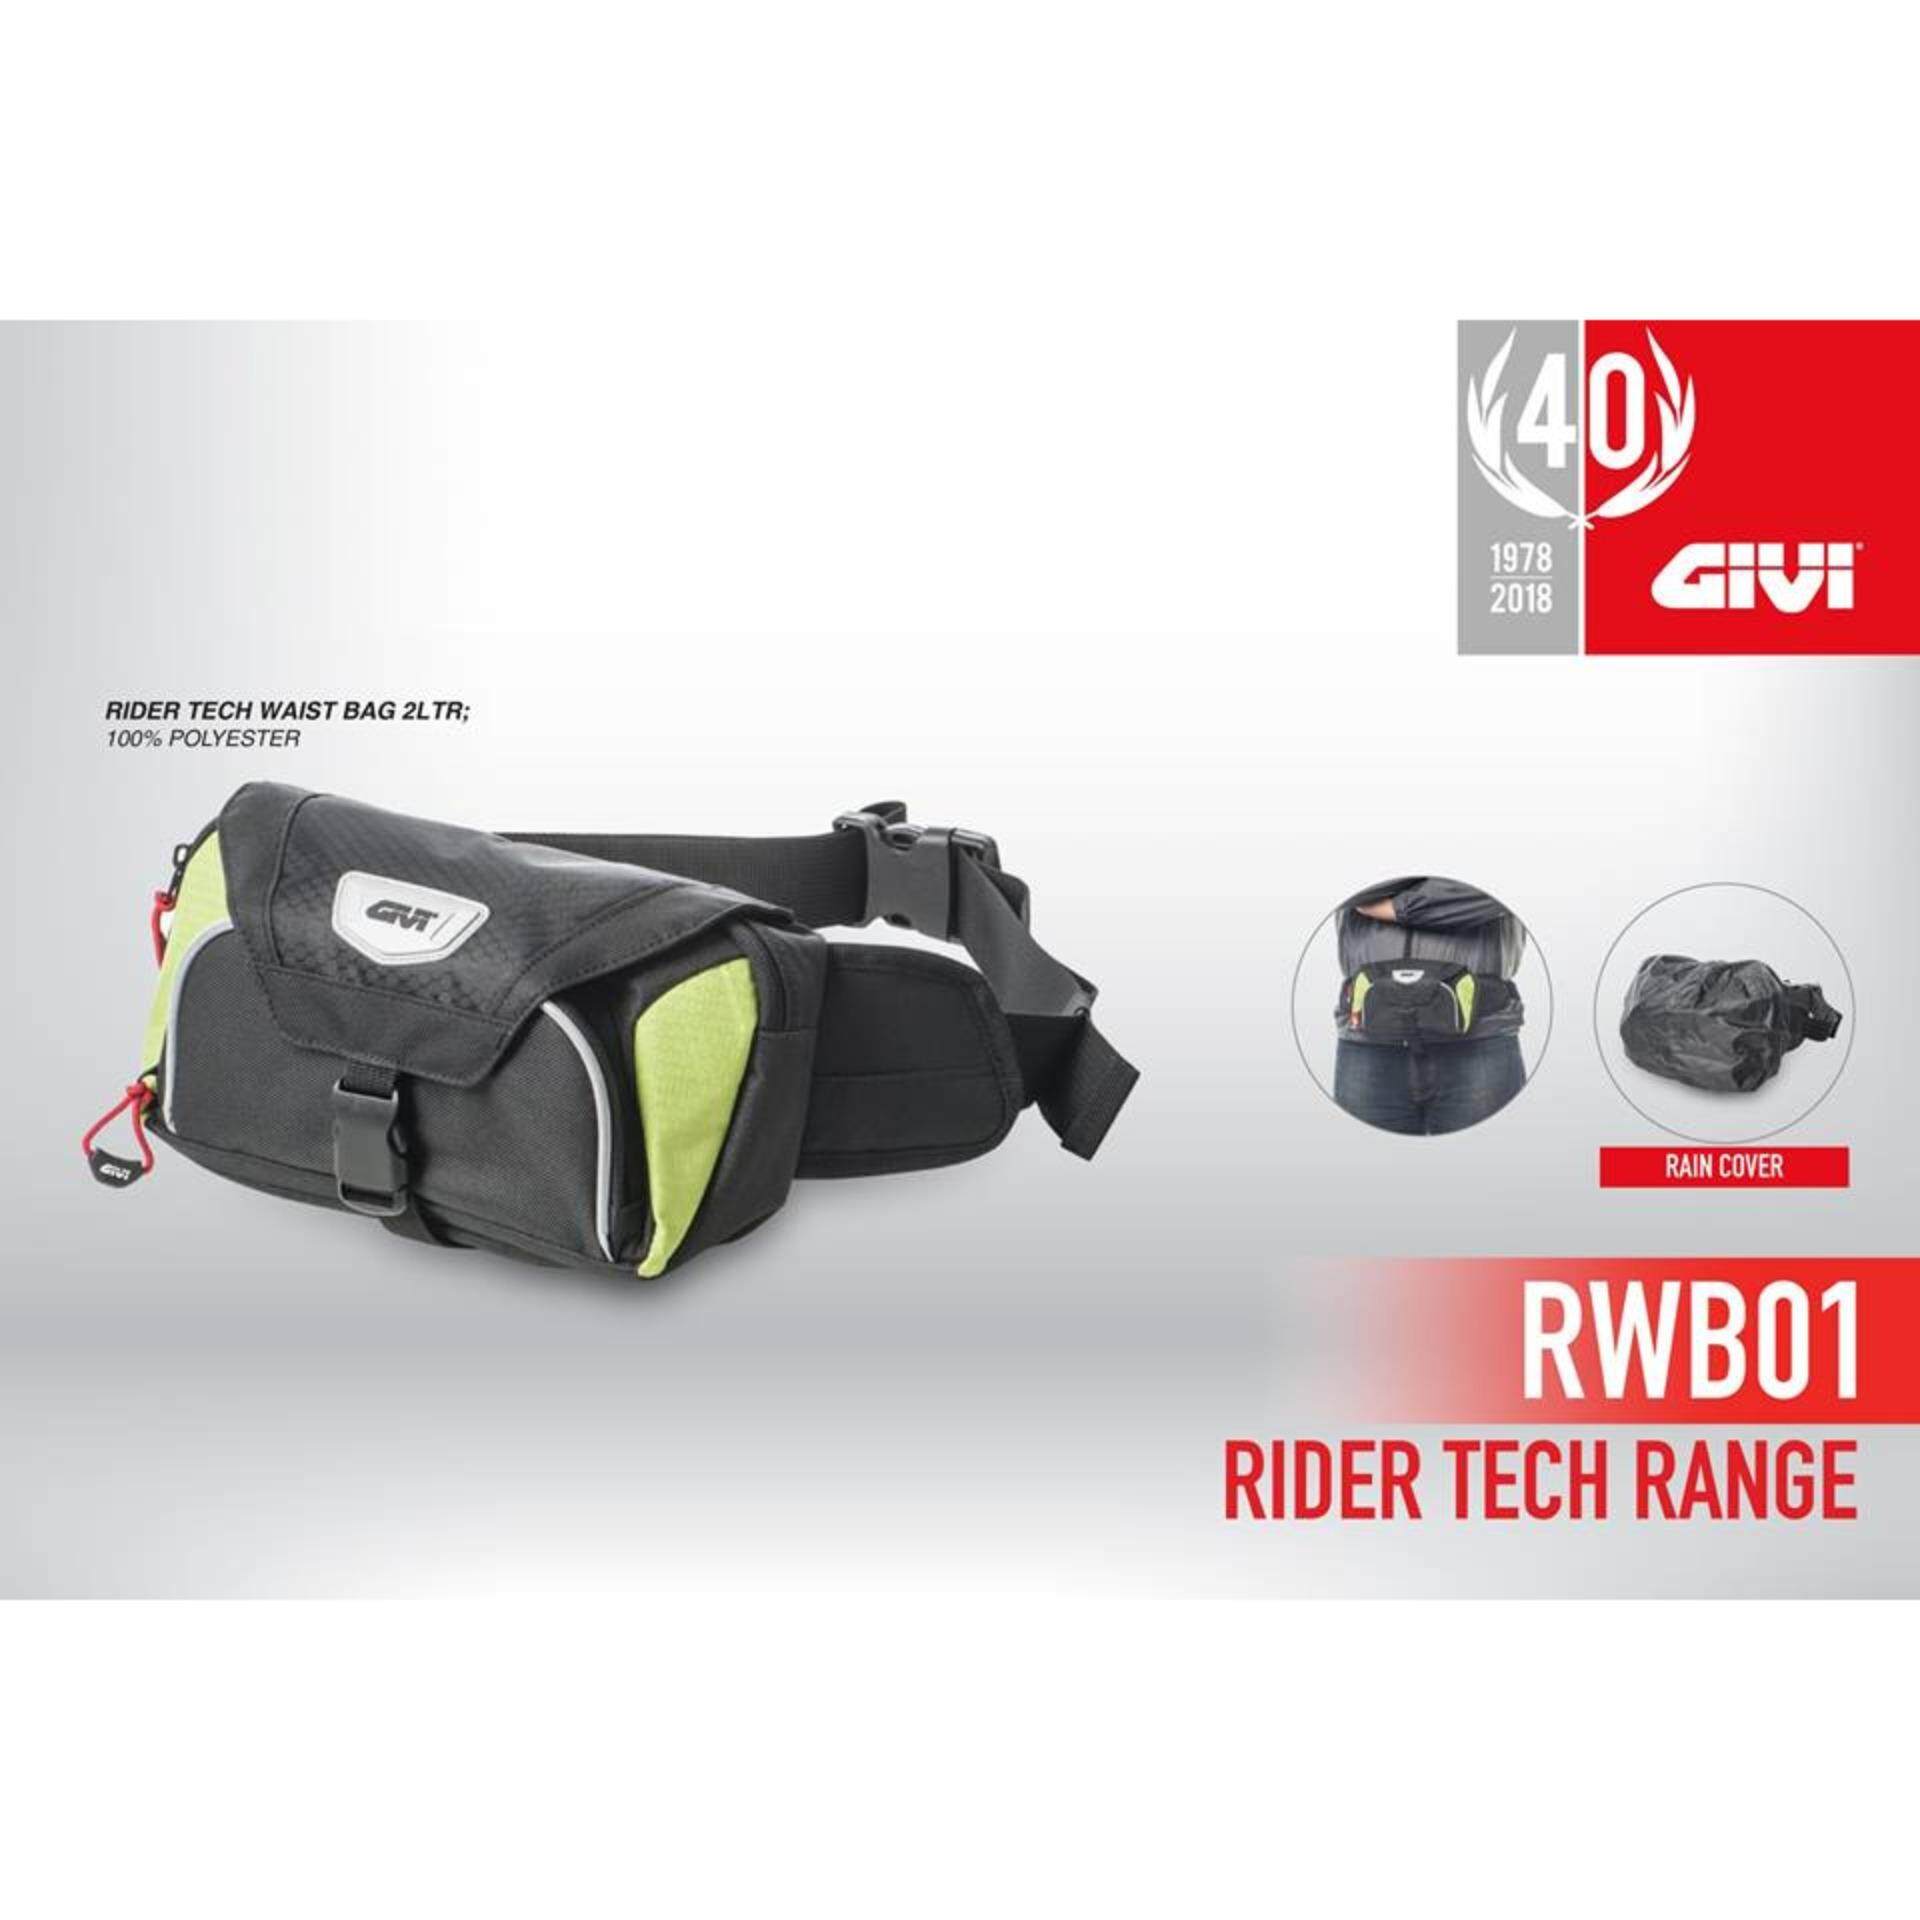 Original Givi Soft Bag RWB01 Rider Tech Waist Bag ( 2 Litre )